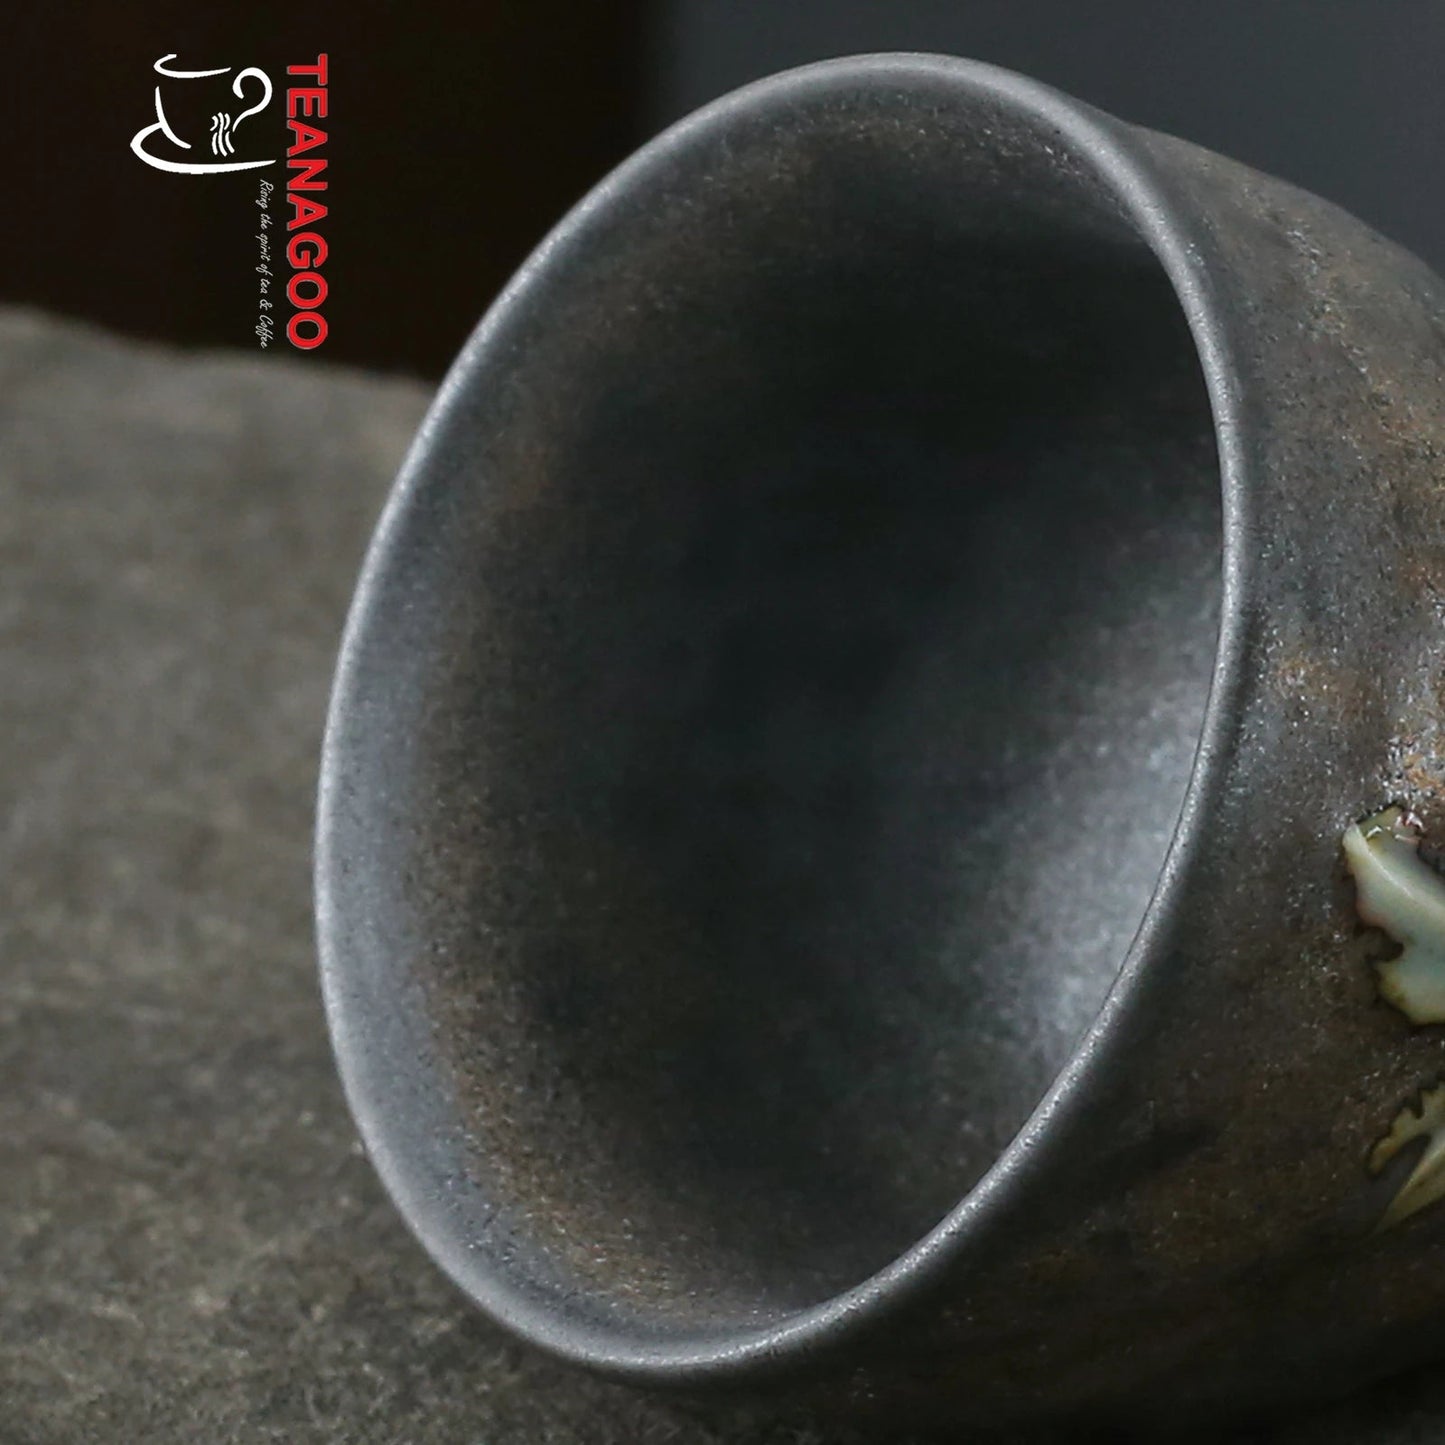 Gilt Iron Glazed Pottery Teacup Handmade Ceramic Cup